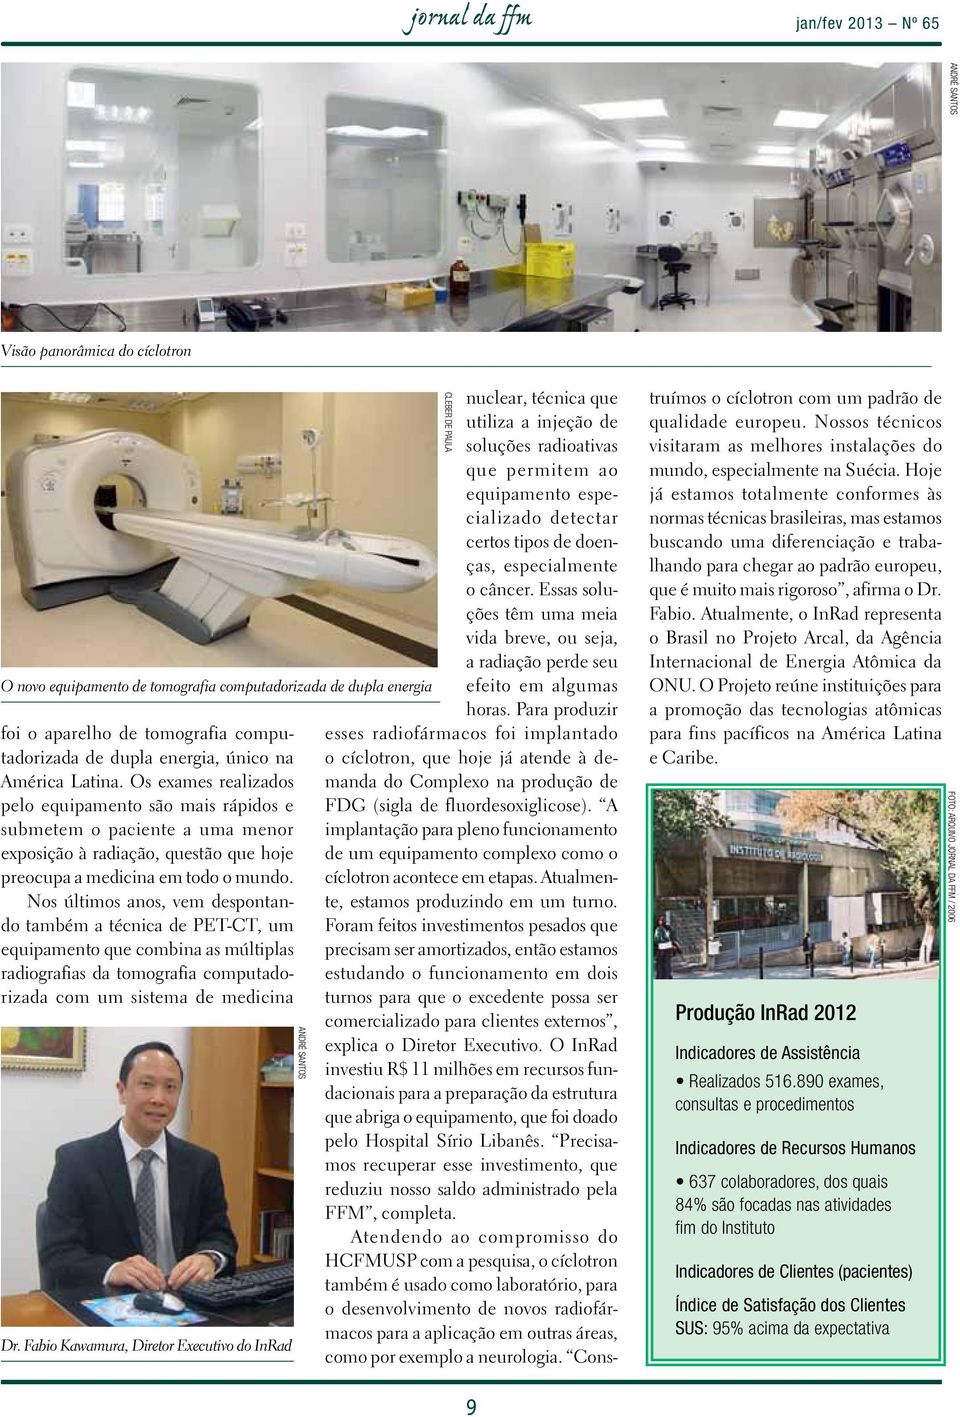 Nos últimos anos, vem despontando também a técnica de PET-CT, um equipamento que combina as múltiplas radiografias da tomografia computadorizada com um sistema de medicina Dr.